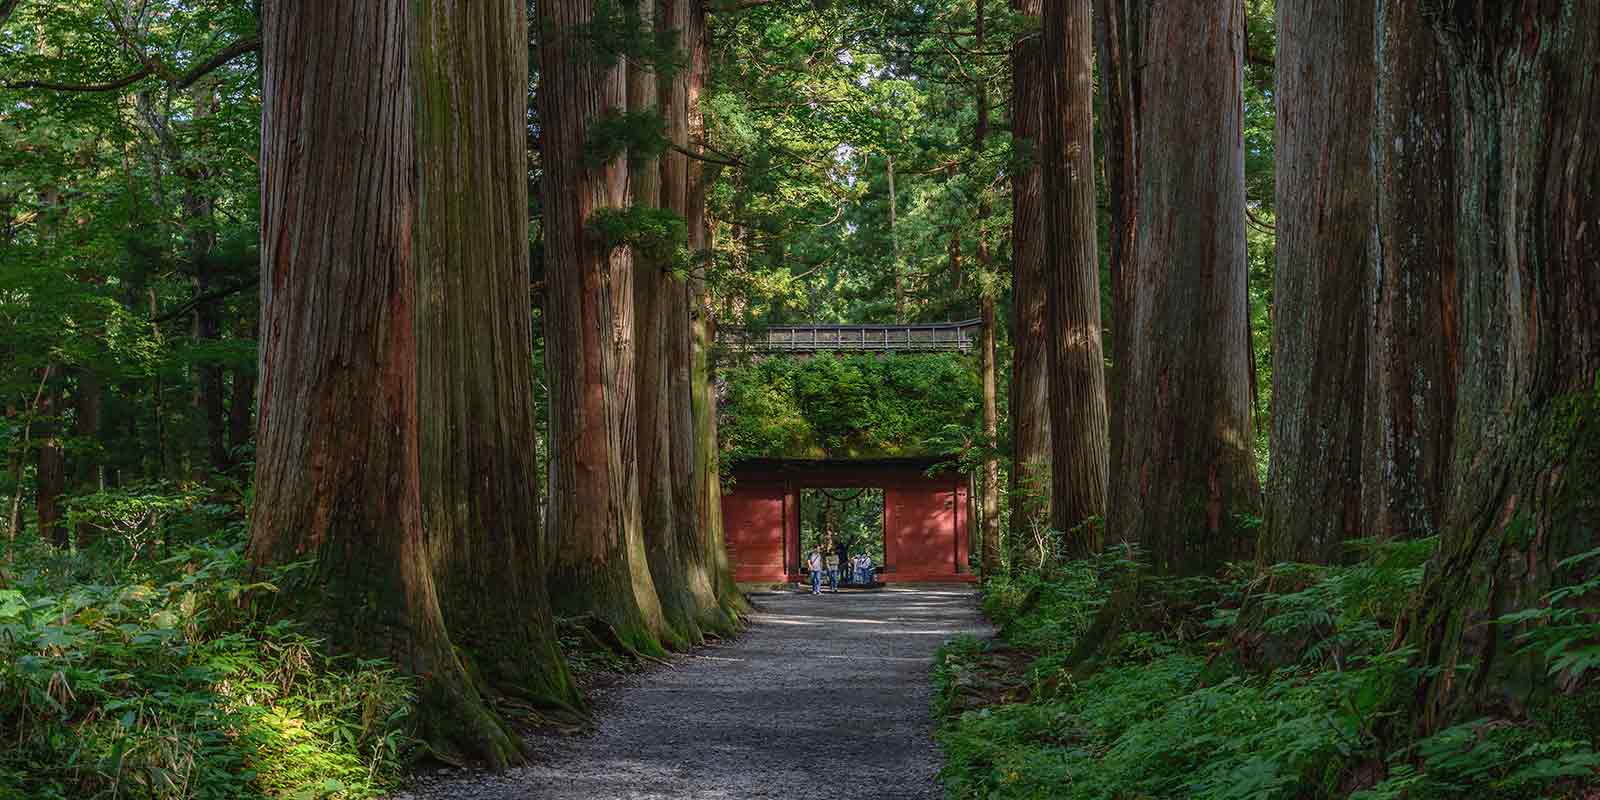 Entrance through the forest to Togakushi Shrine on the Togakushi Ninja Trail